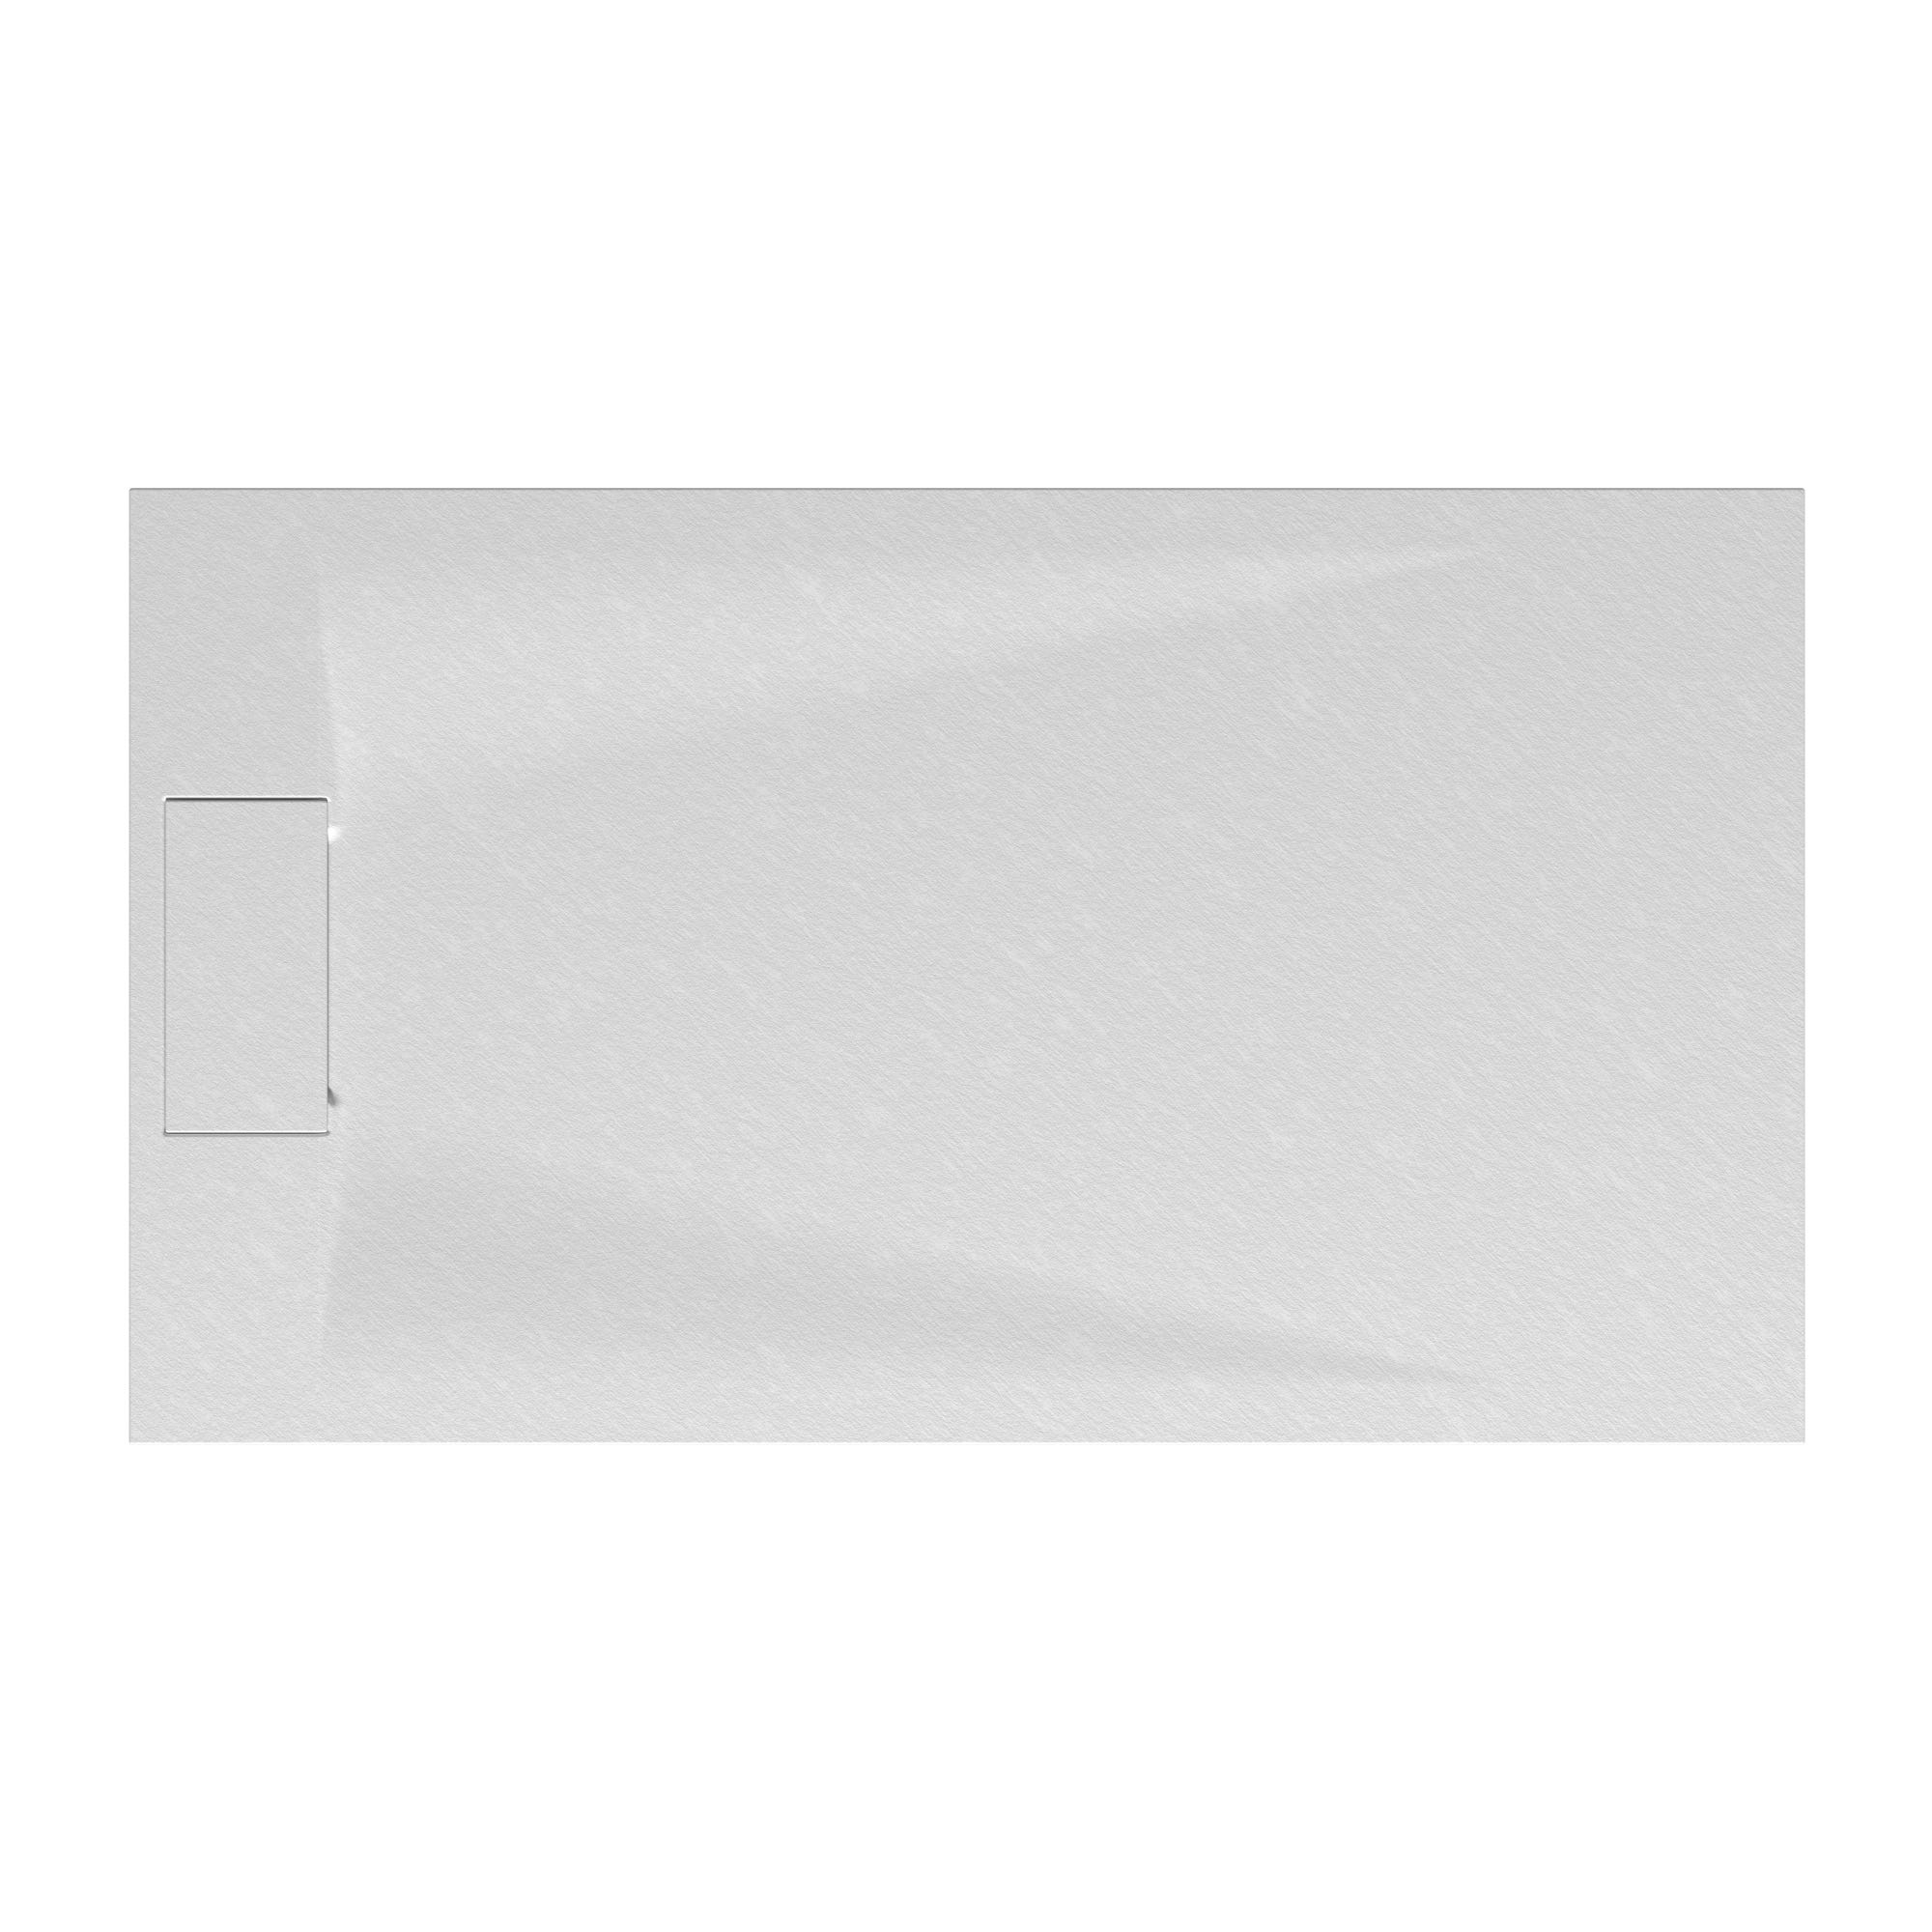 Schulte receveur de douche 80 x 140 x 3,2cm, blanc effet pierre ultra légers, rectangulaire, extra plat à poser ou à encastrer, bac à douche 1